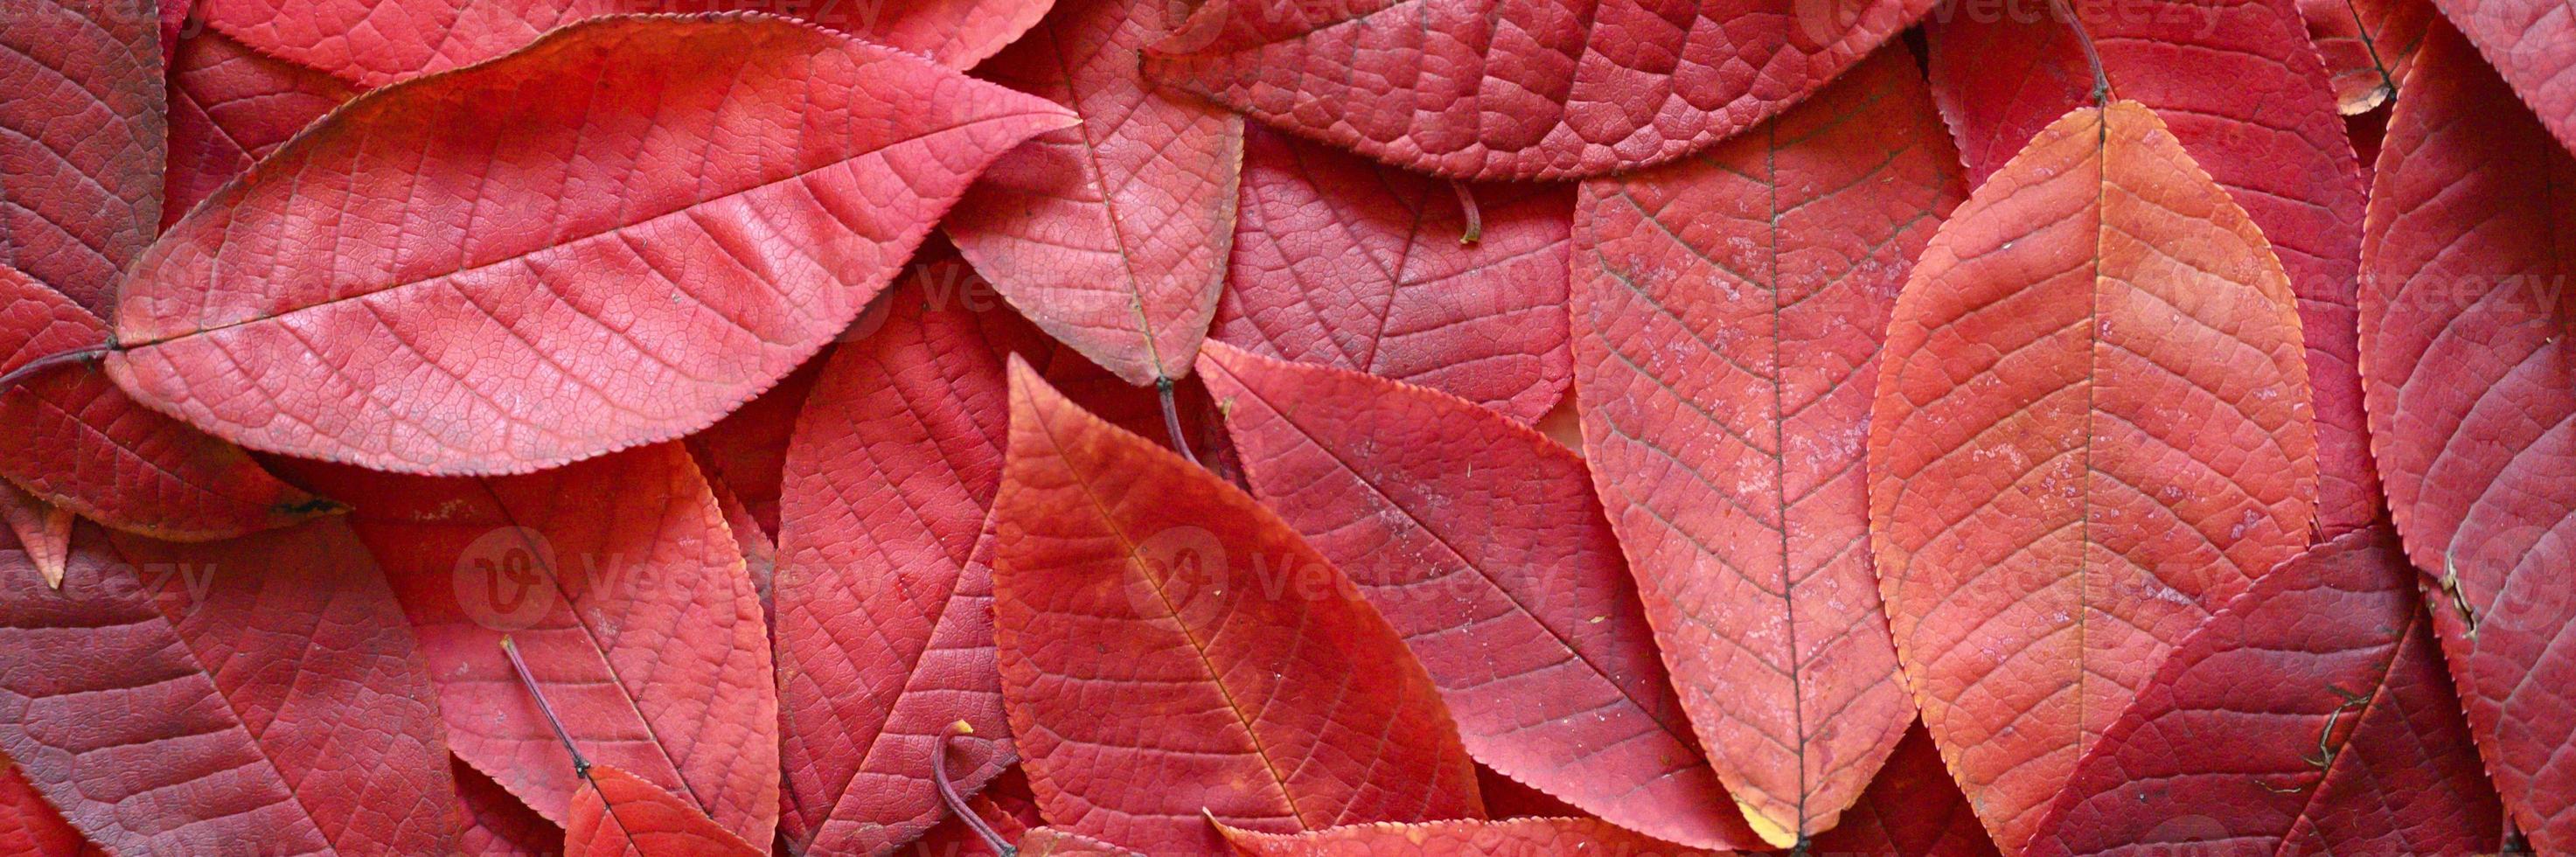 Fondo de hojas rojas de otoño caídas de un cerezo foto